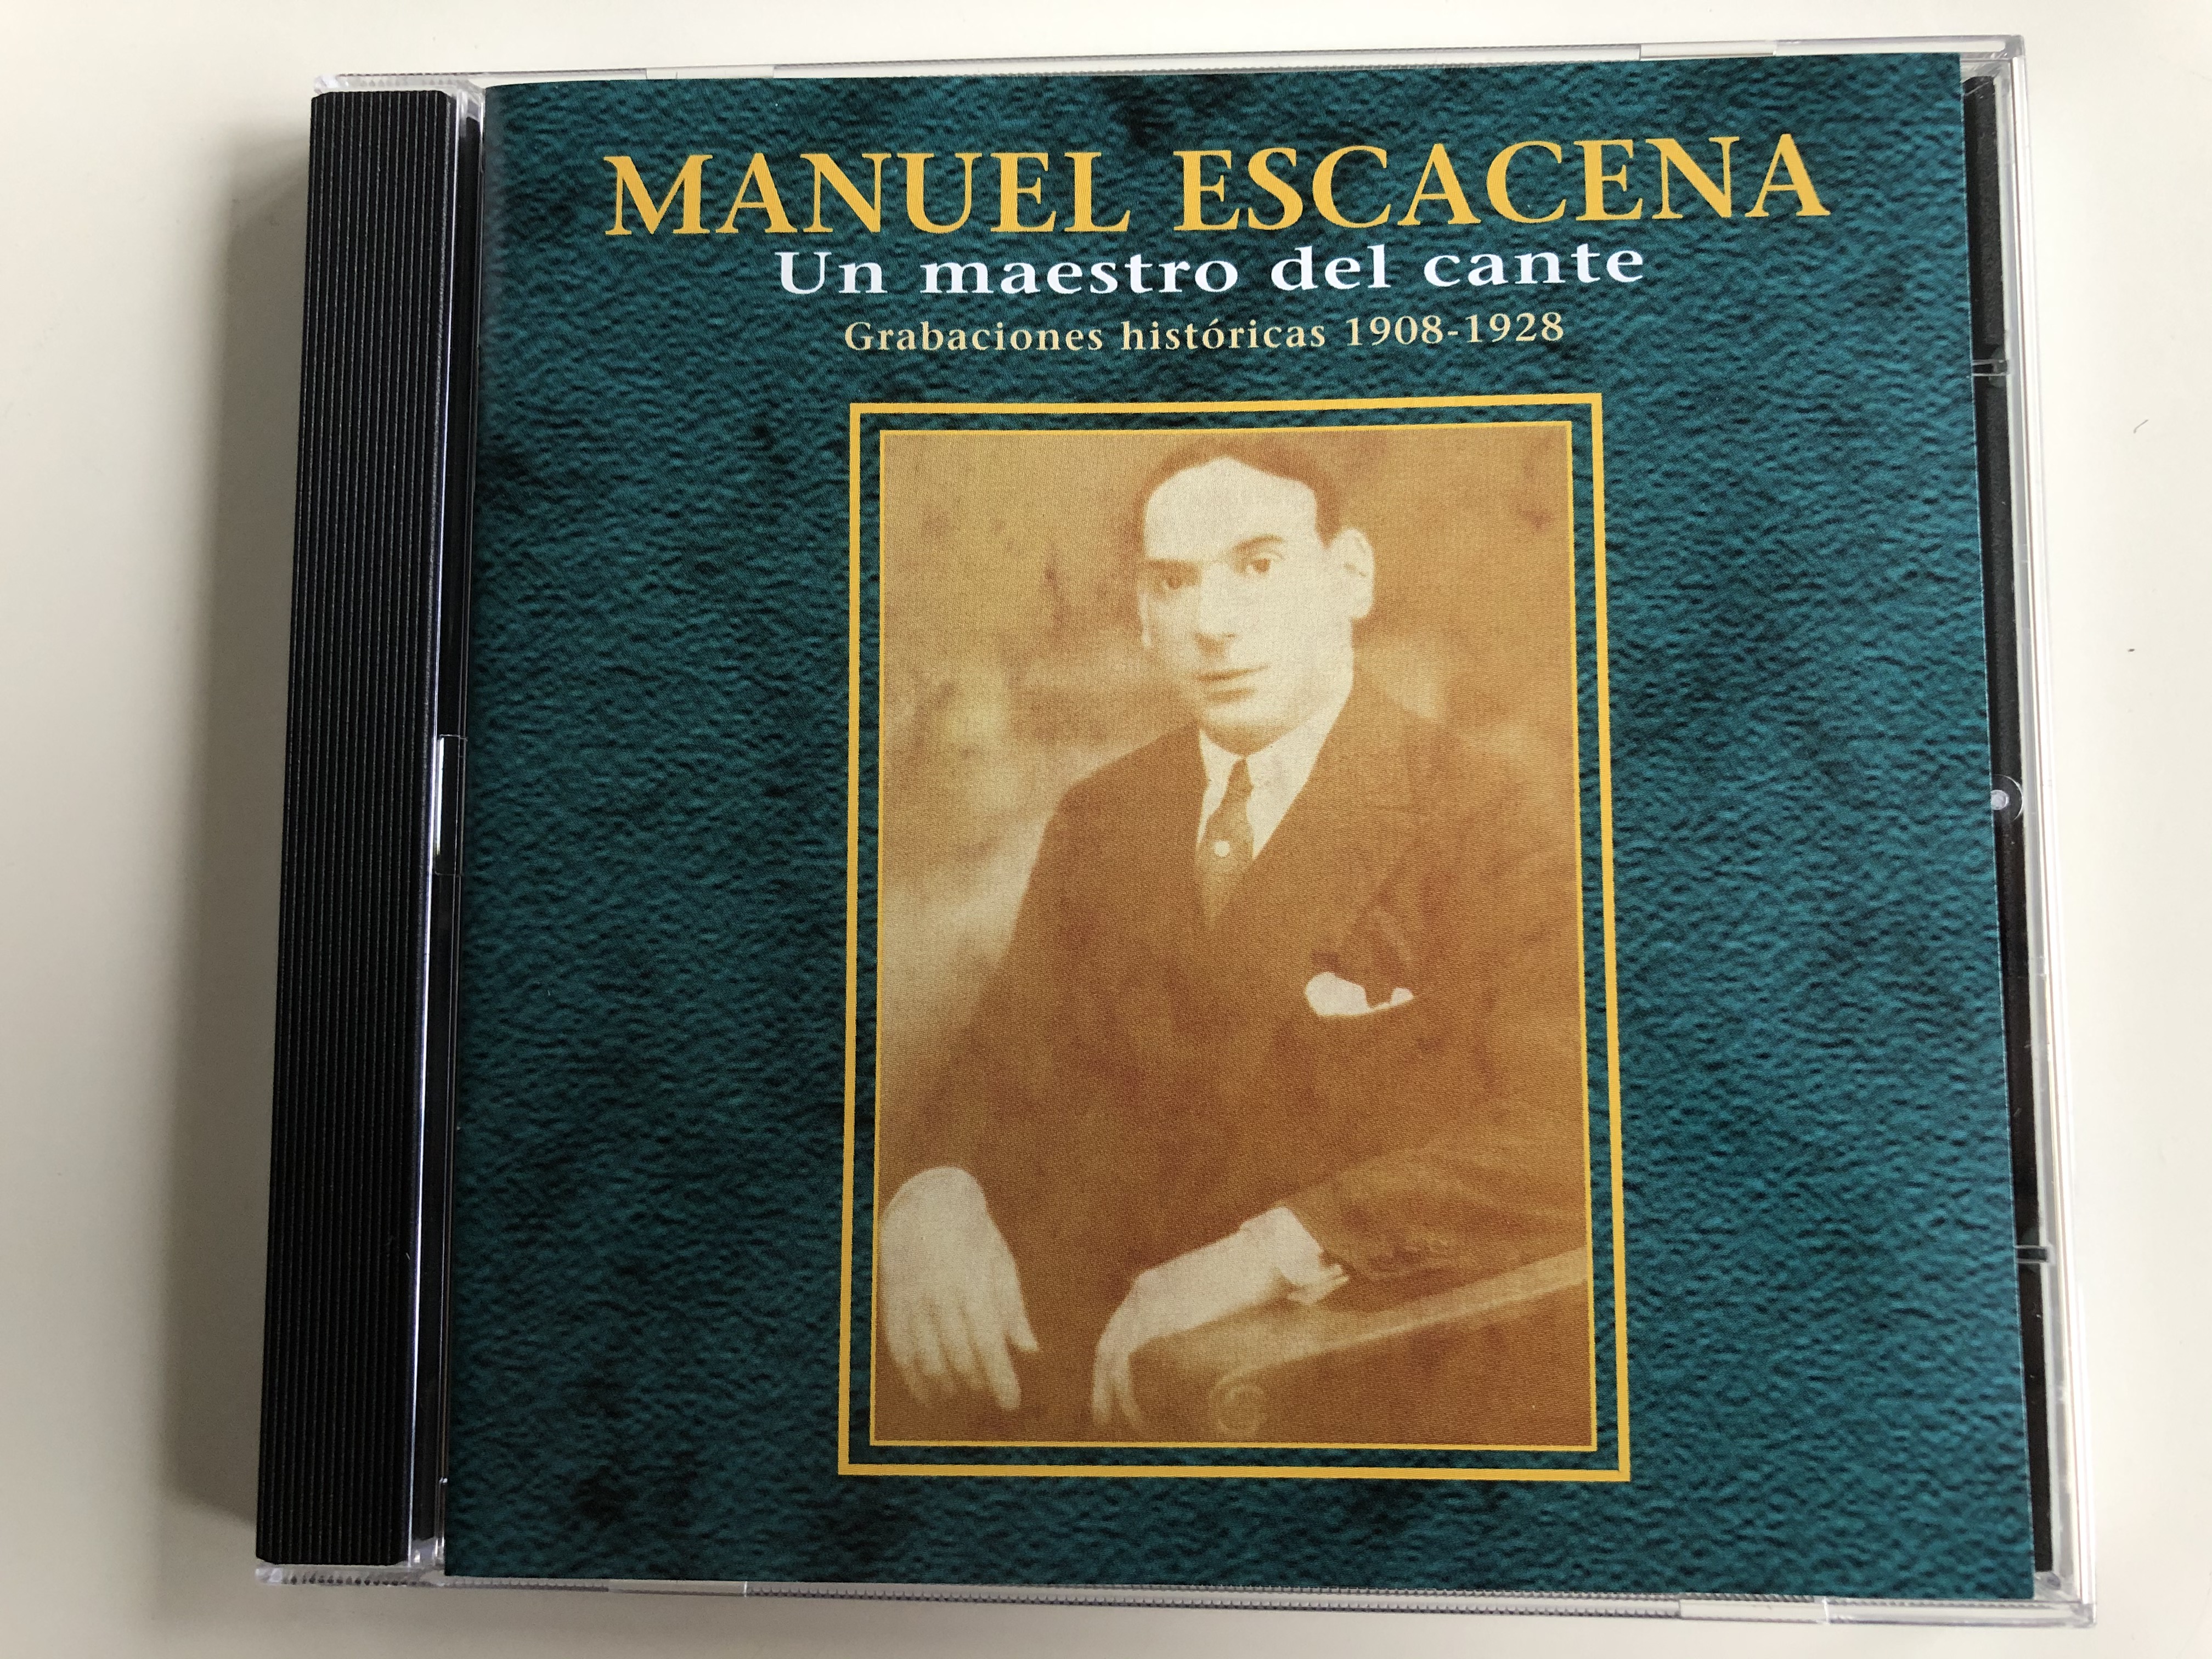 manuel-escacena-un-maestro-del-cante-grabaciones-hist-ricas-1908-1928-sonifolk-s.a.-audio-cd-2000-204973-204-1-.jpg